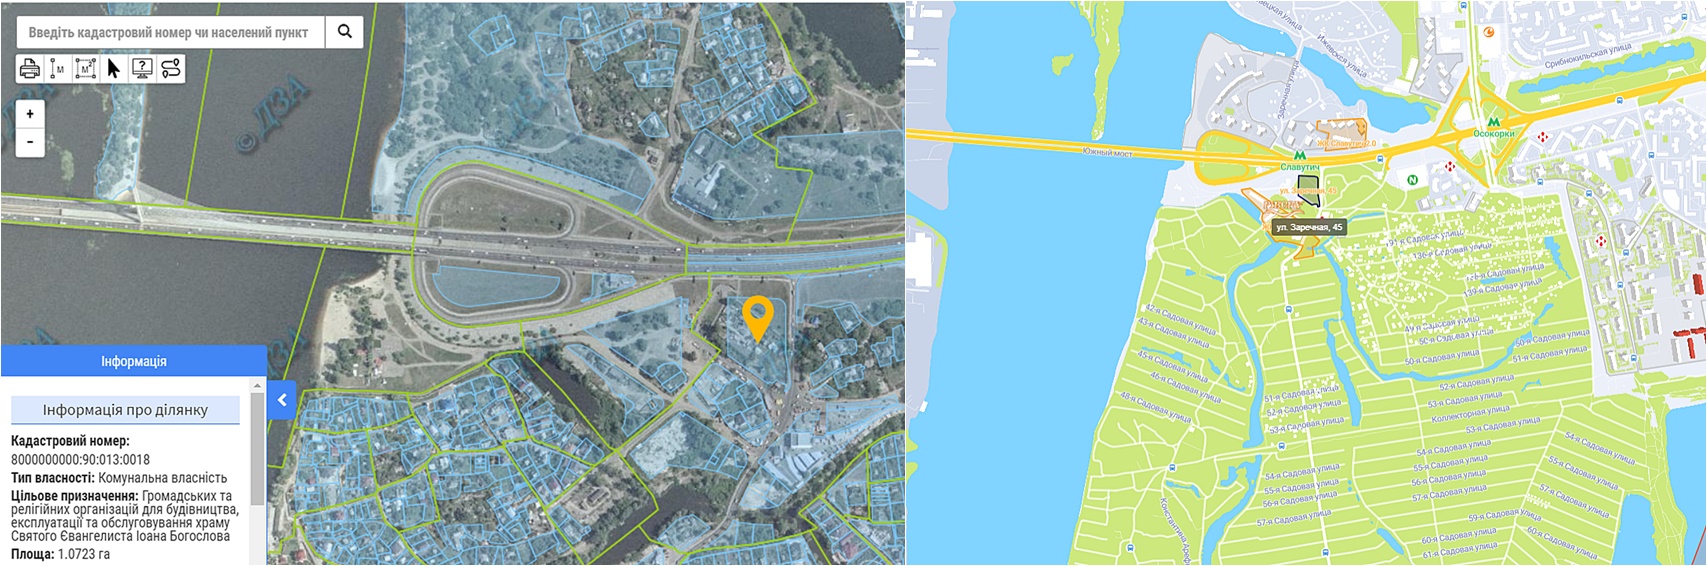 Многофункциональный комплекс по ул. Заречная, 45 данные кадастра и на карте